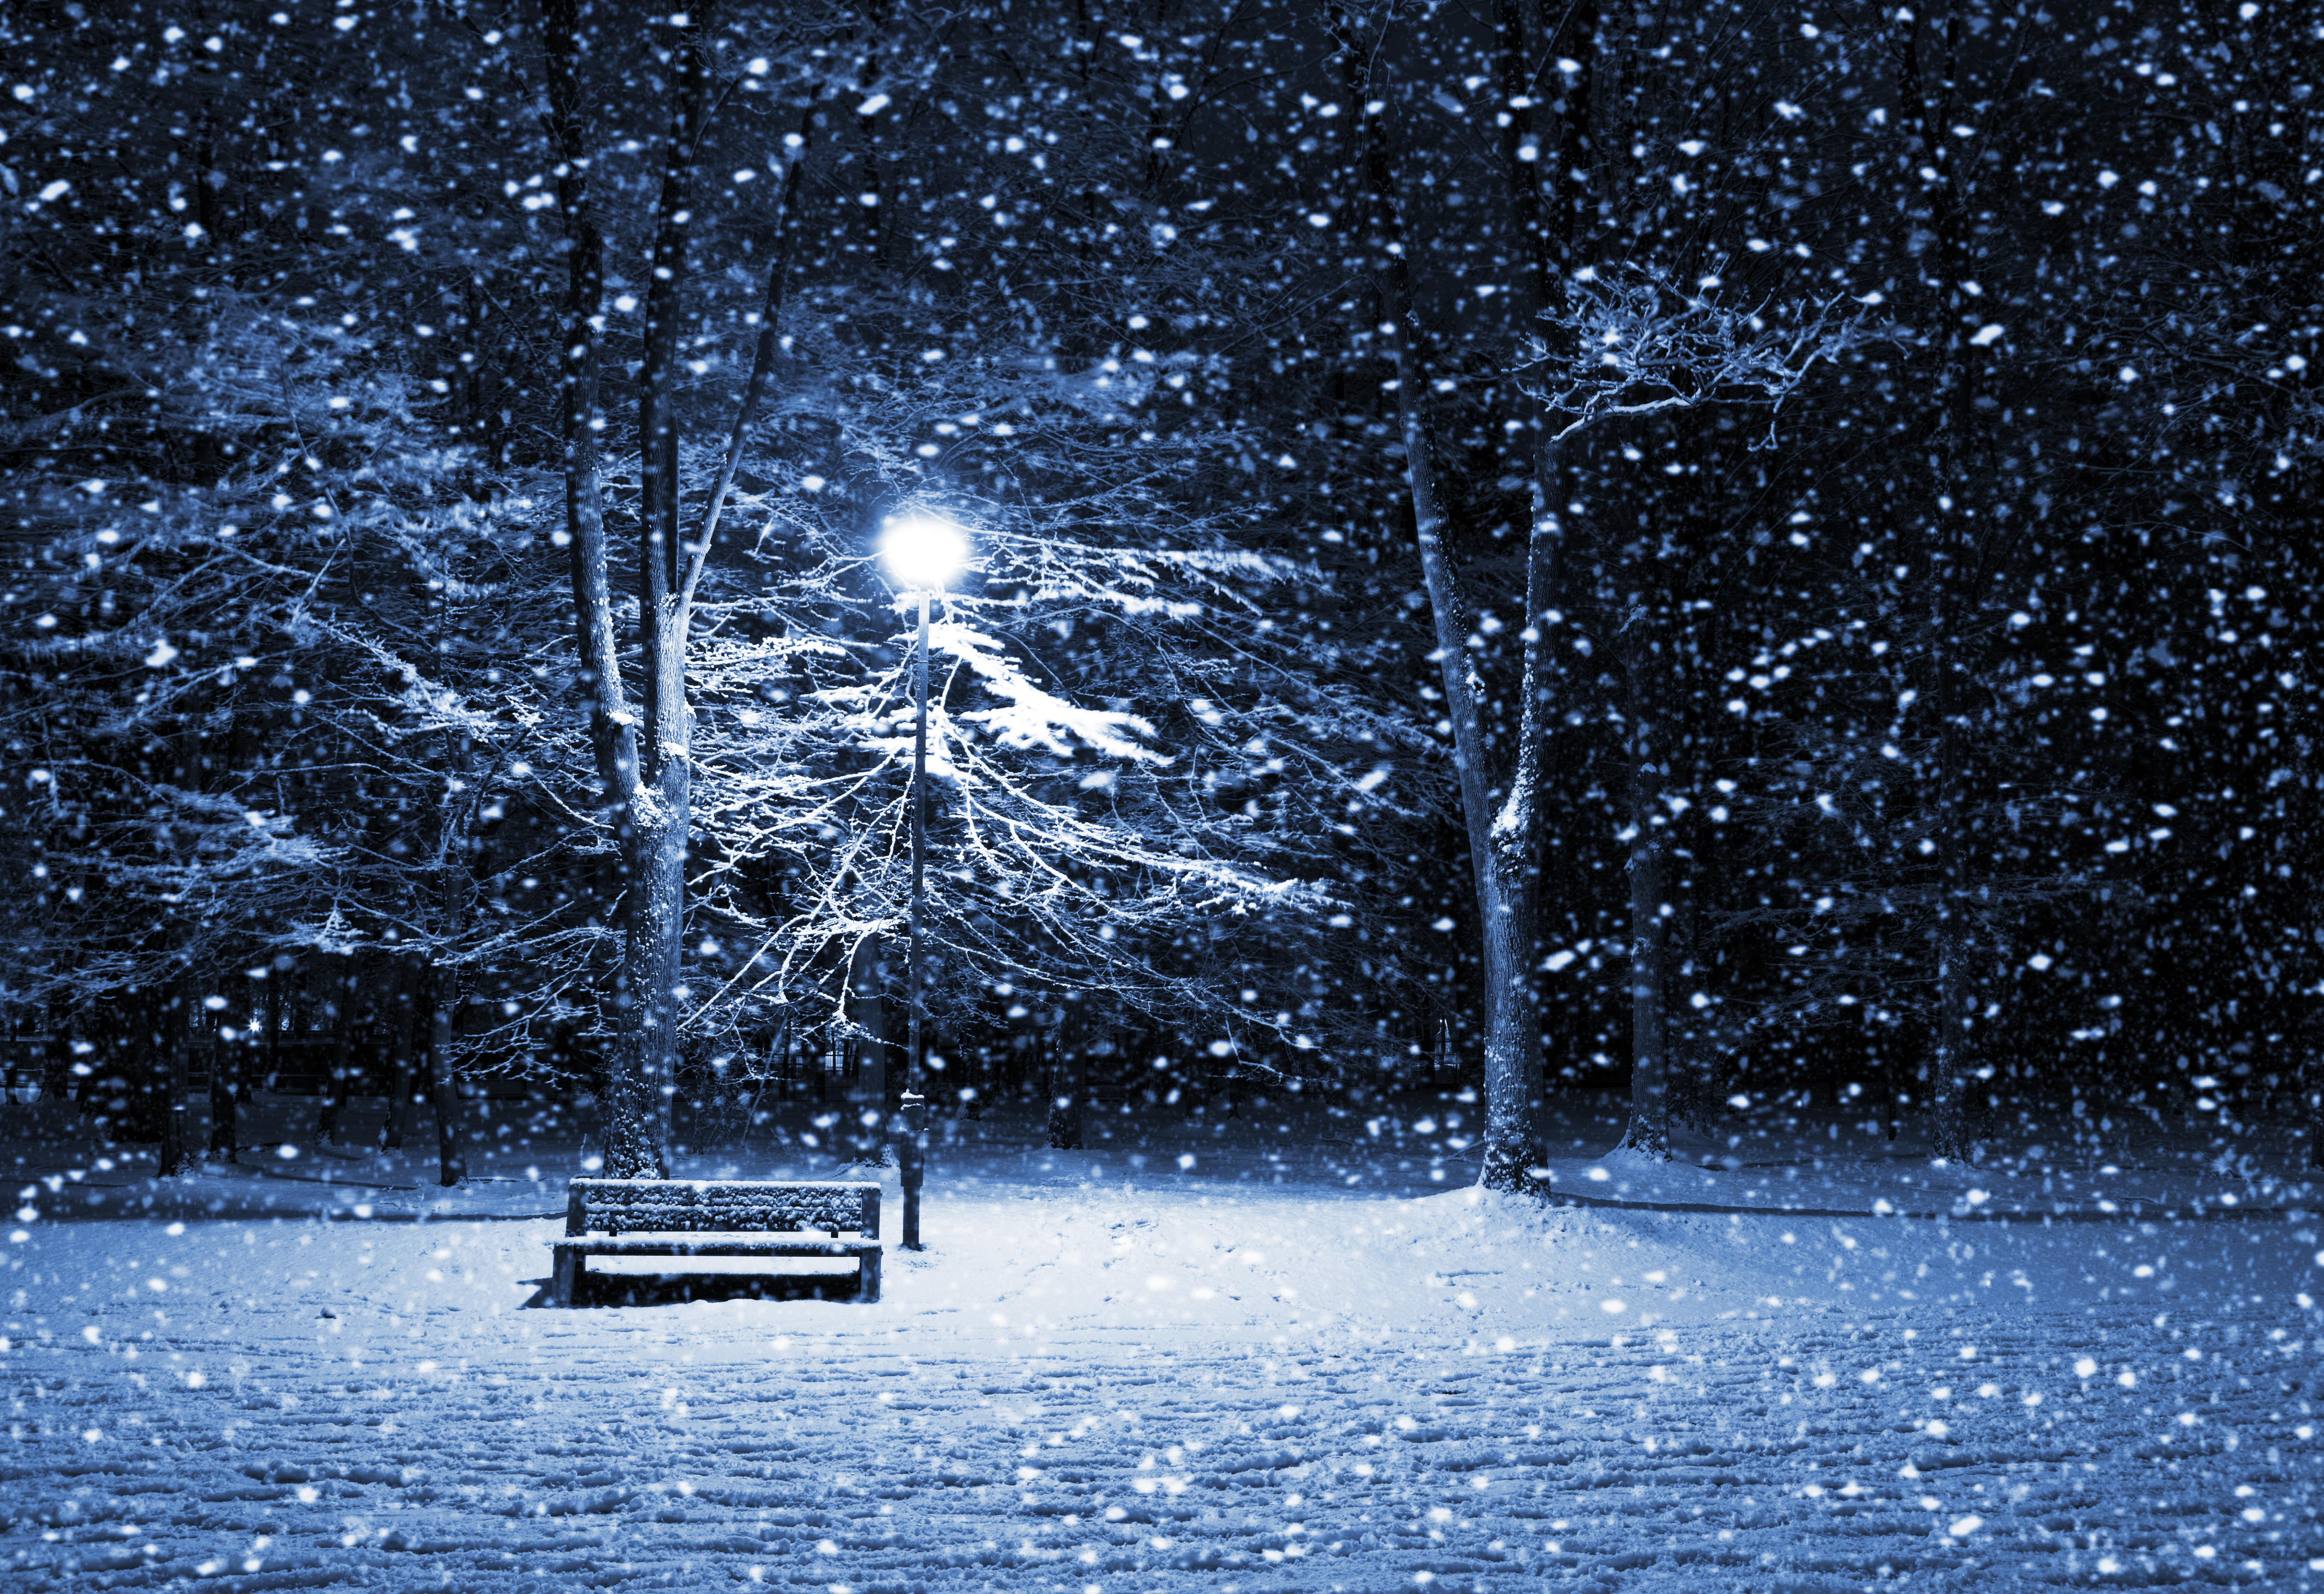 HD Winter Night Landscape - HD Wallpaper Download